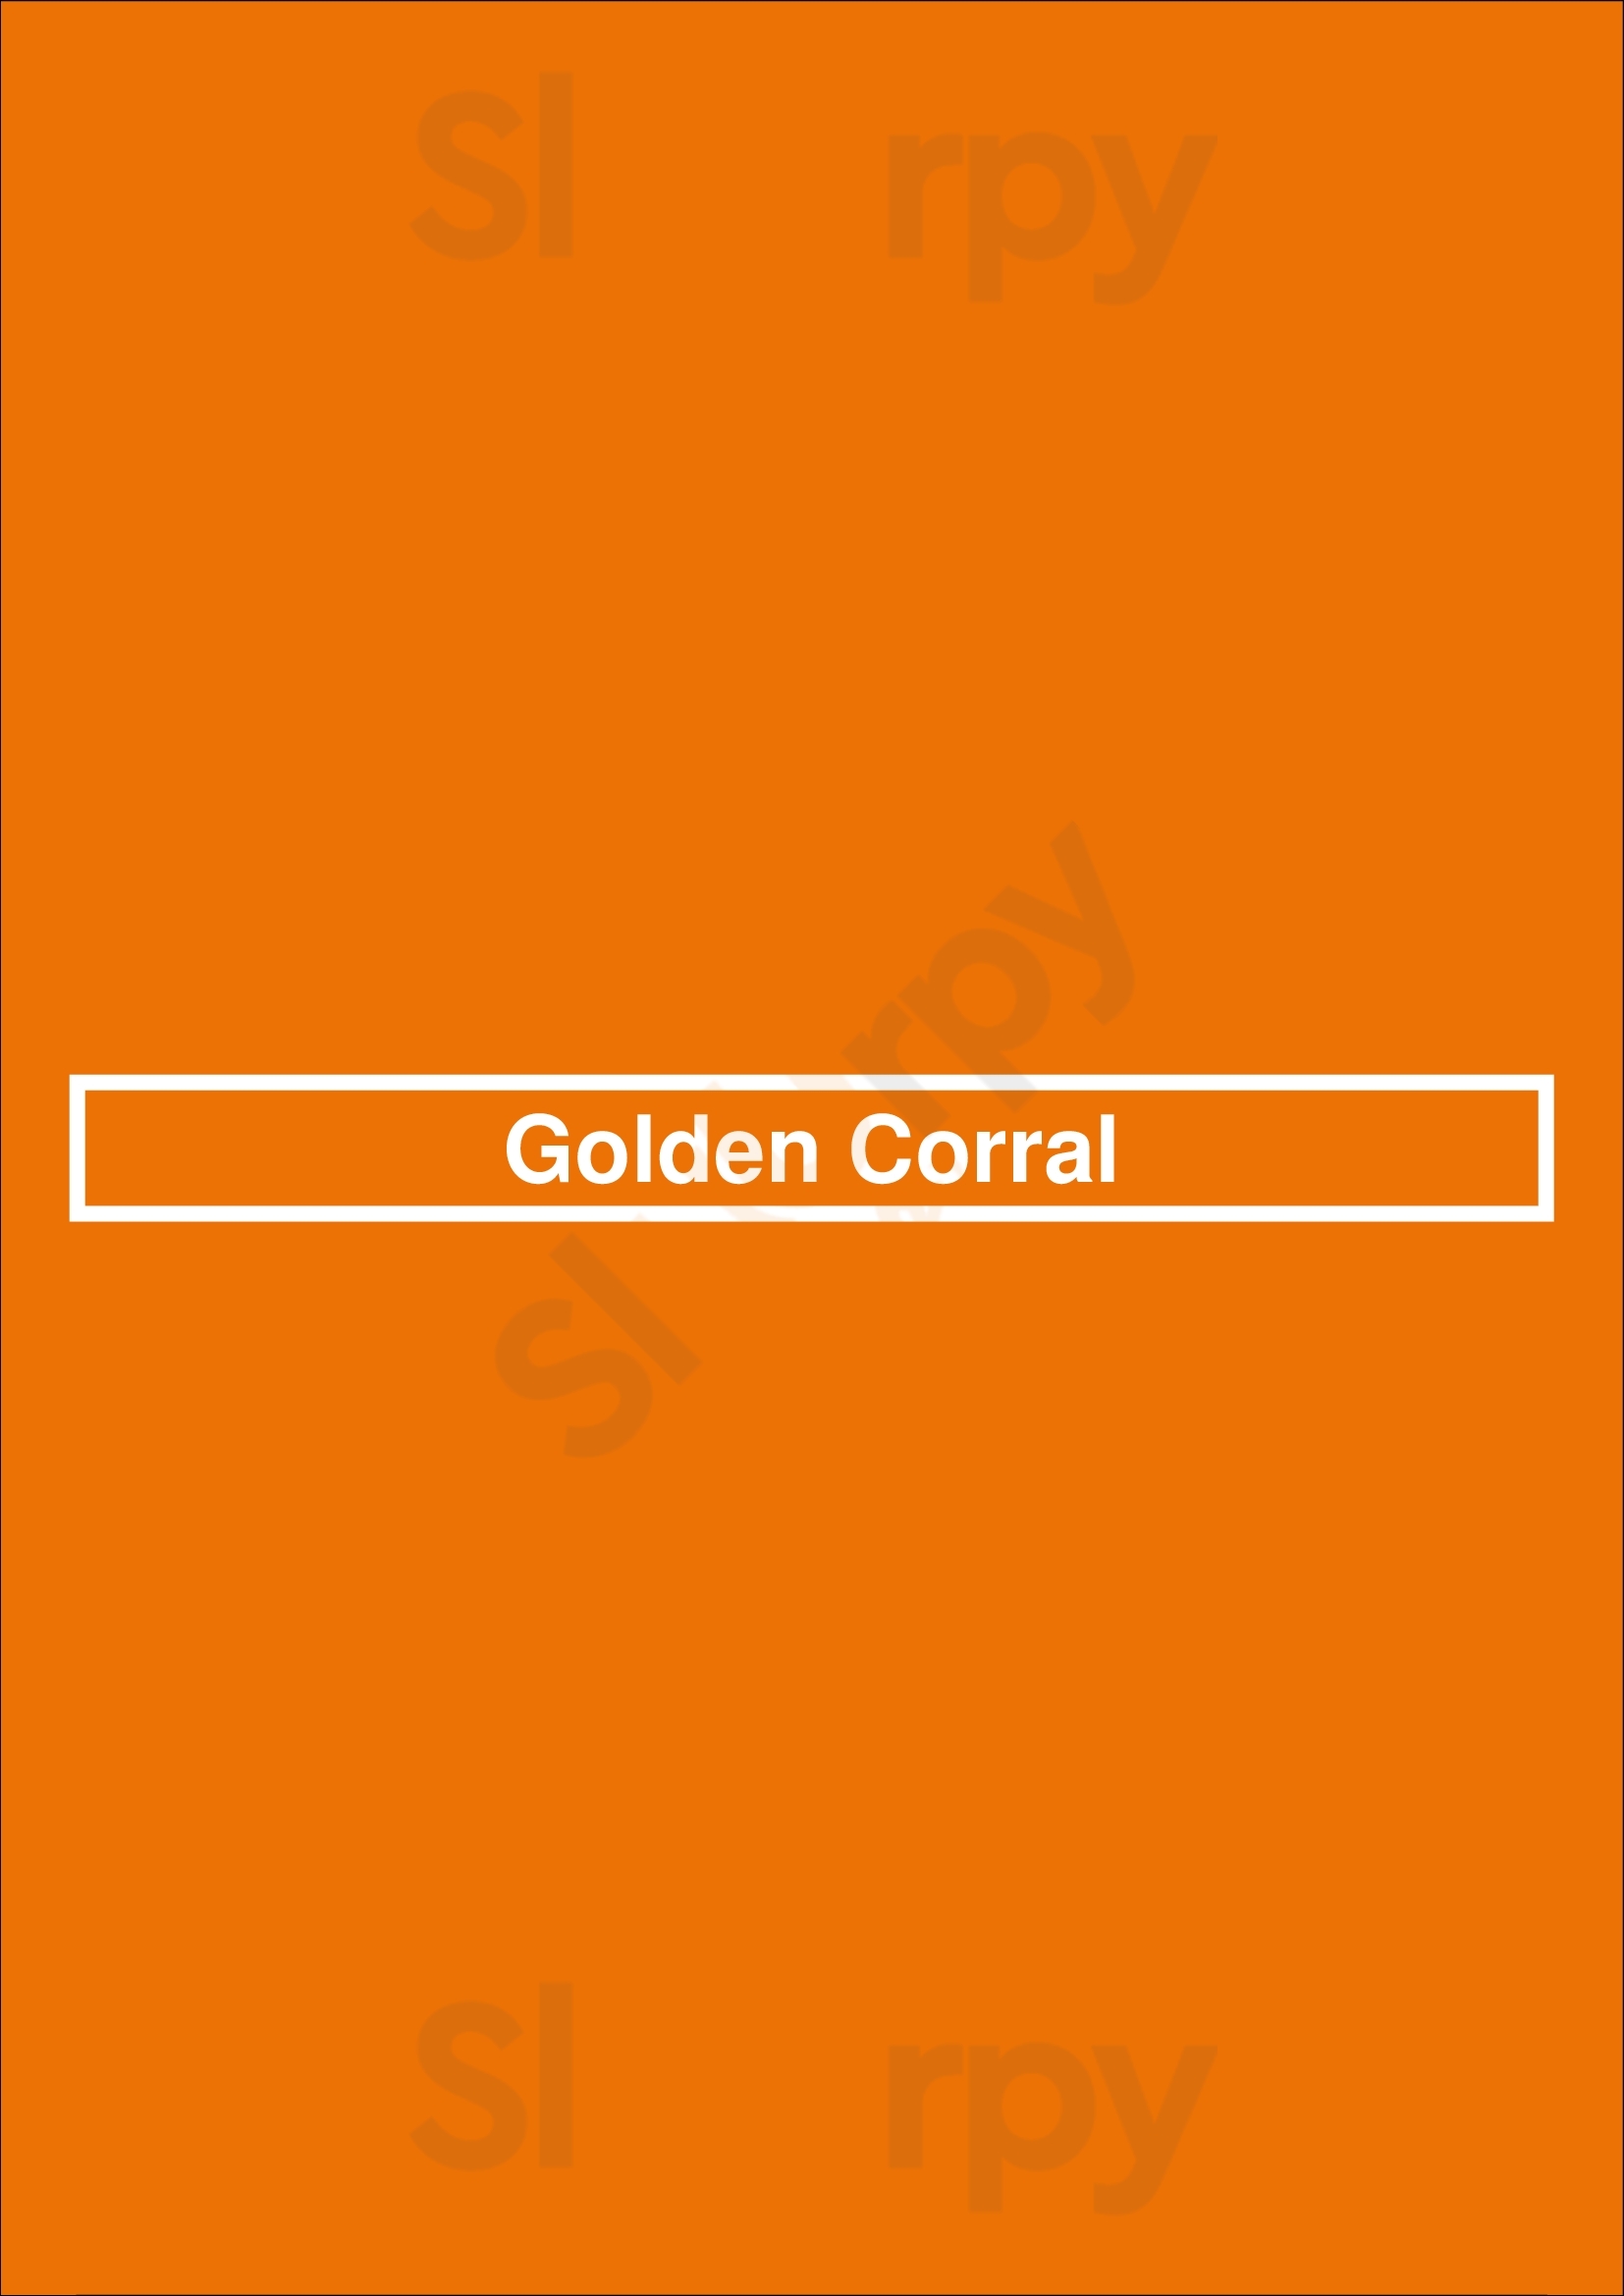 Golden Corral Pueblo Menu - 1